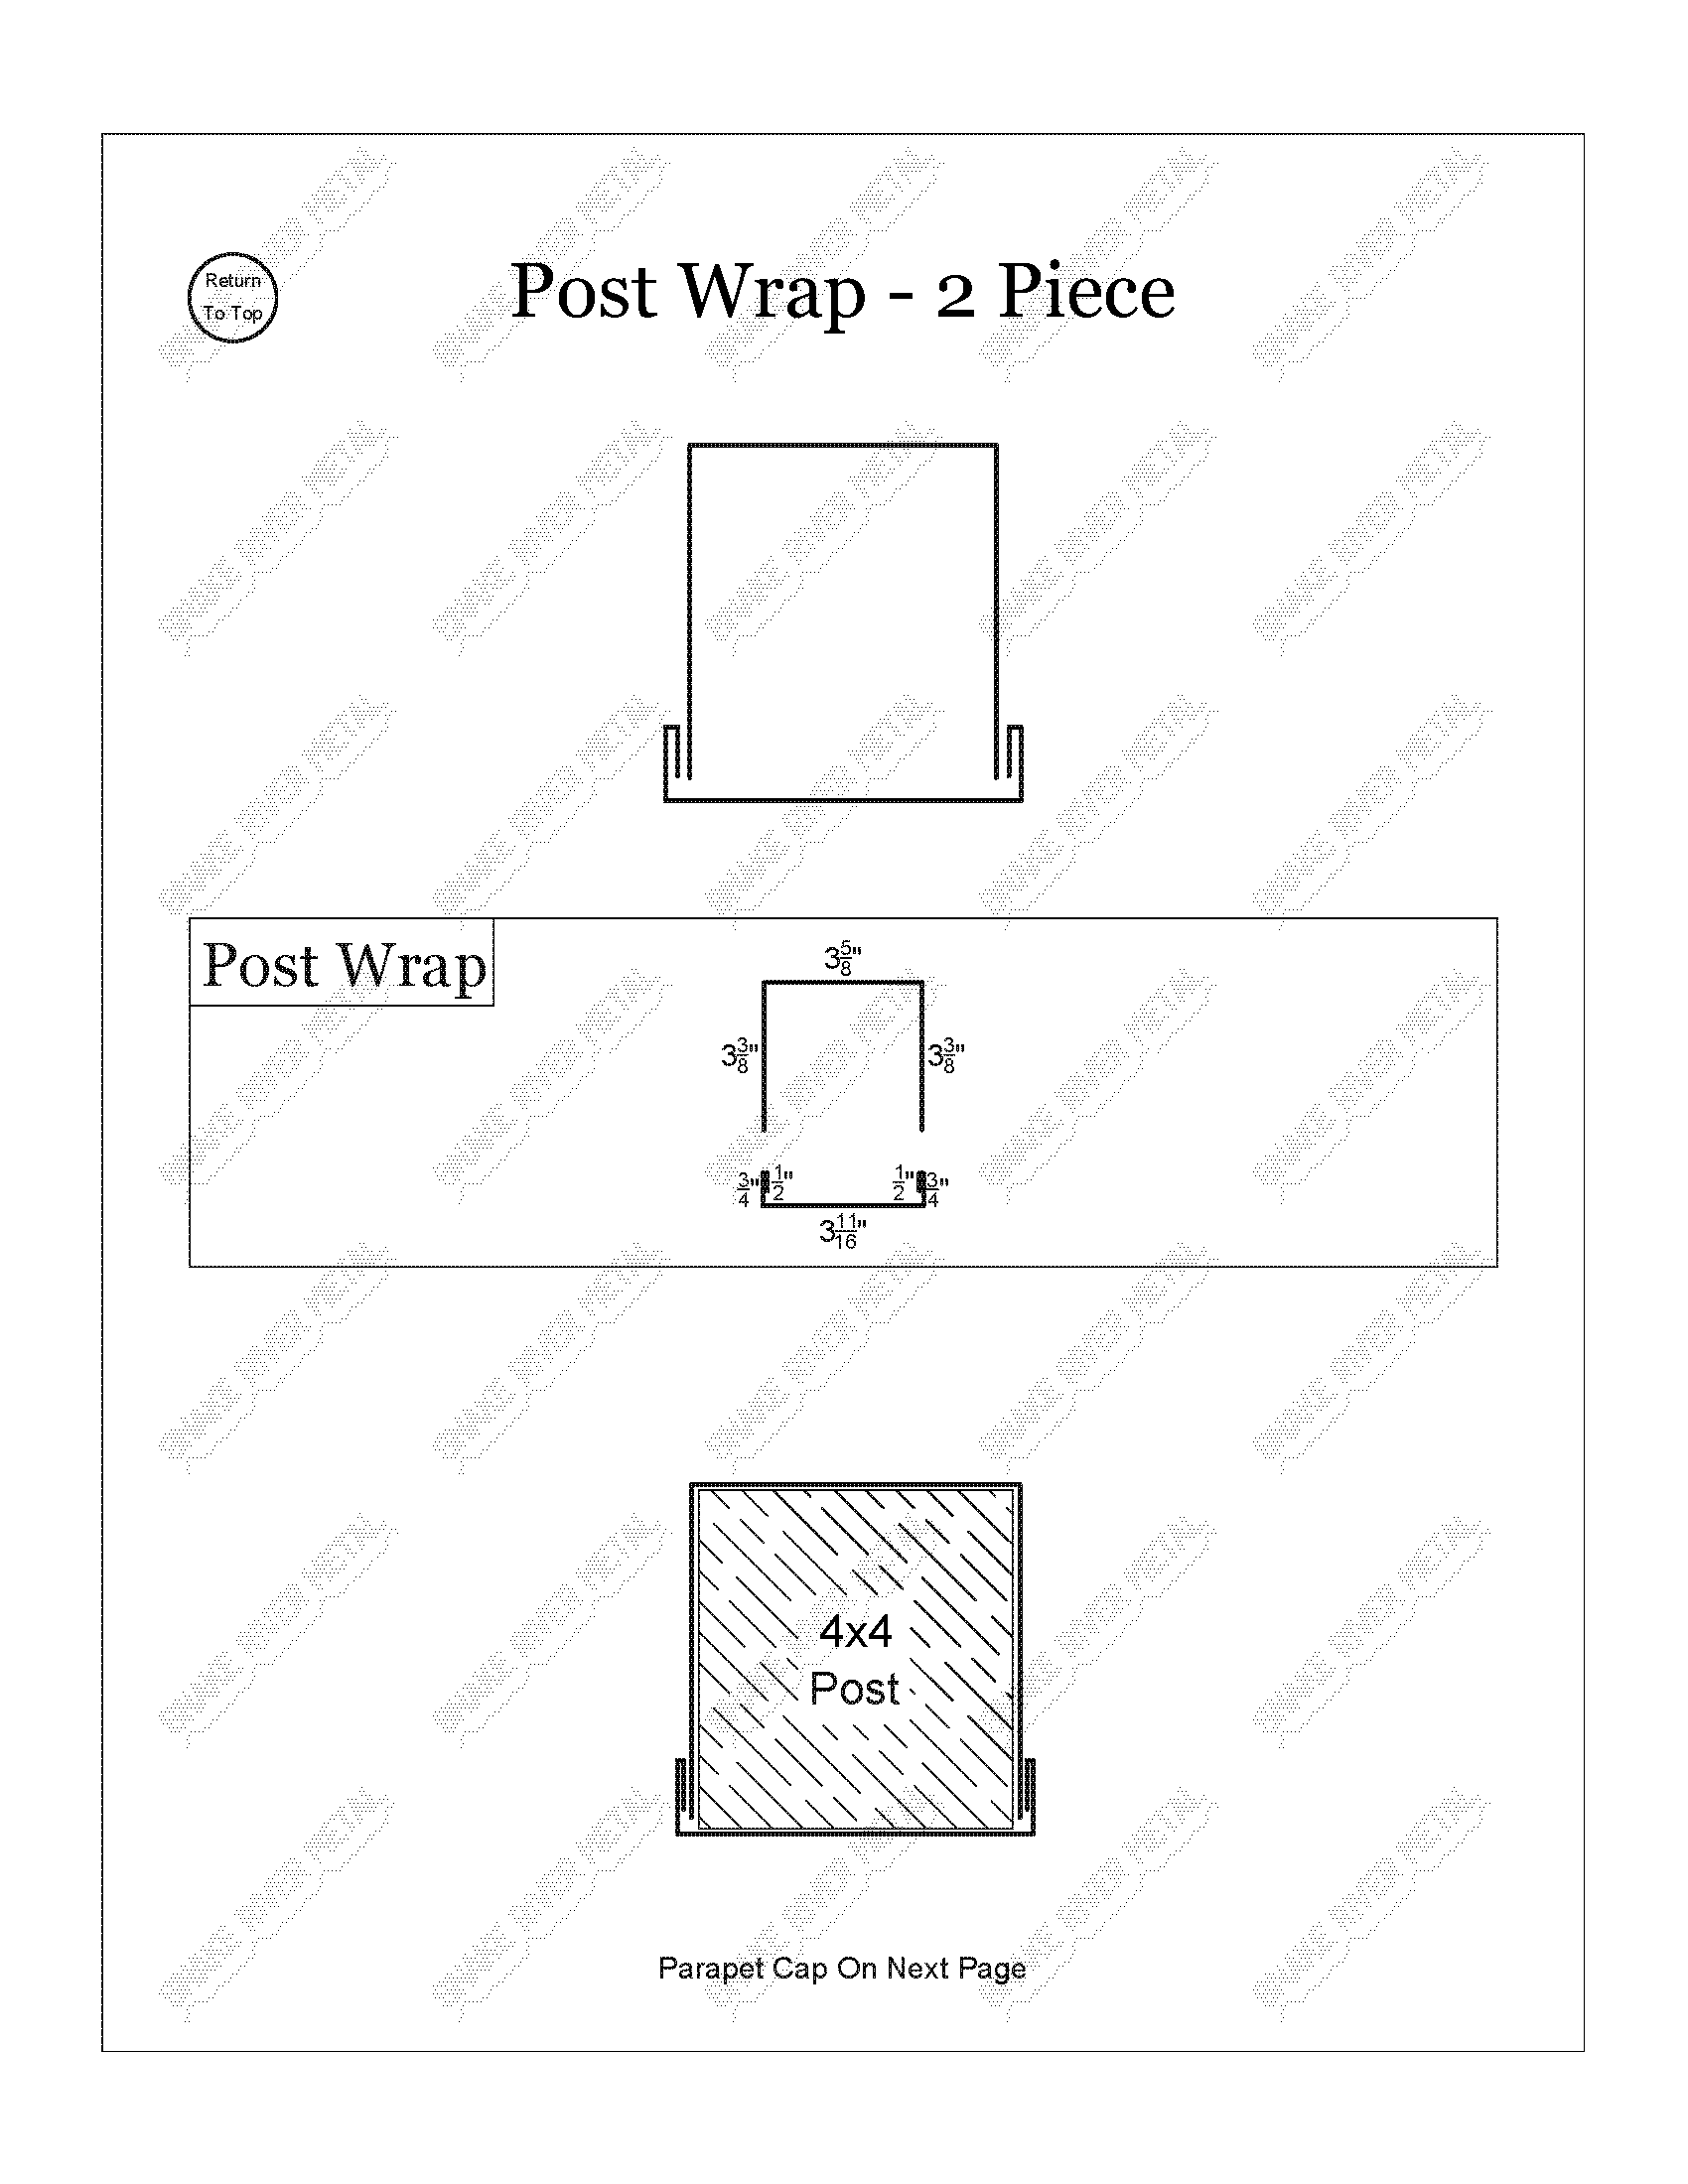 Post Wrap 2 Piece - PBR Trim